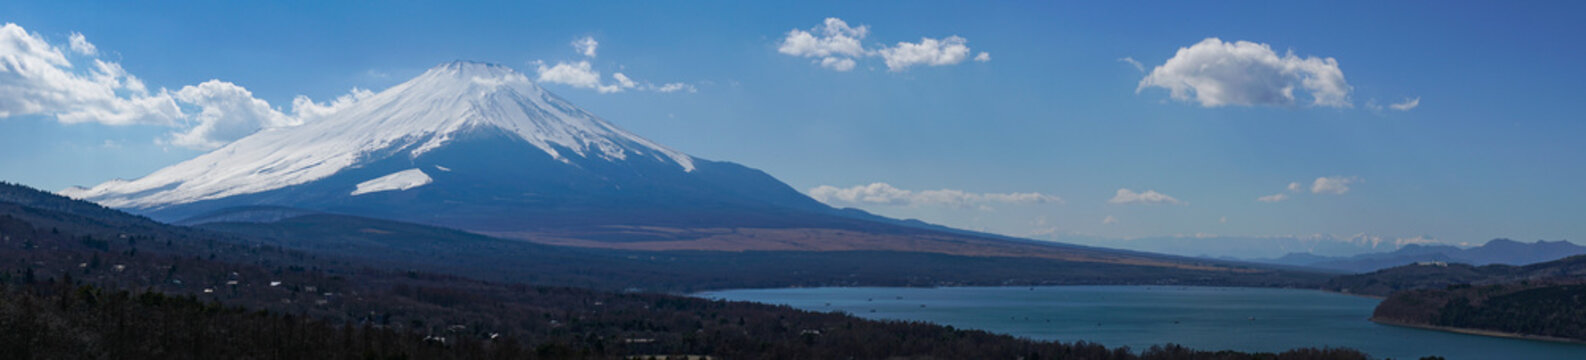 富士山のパノラマ写真